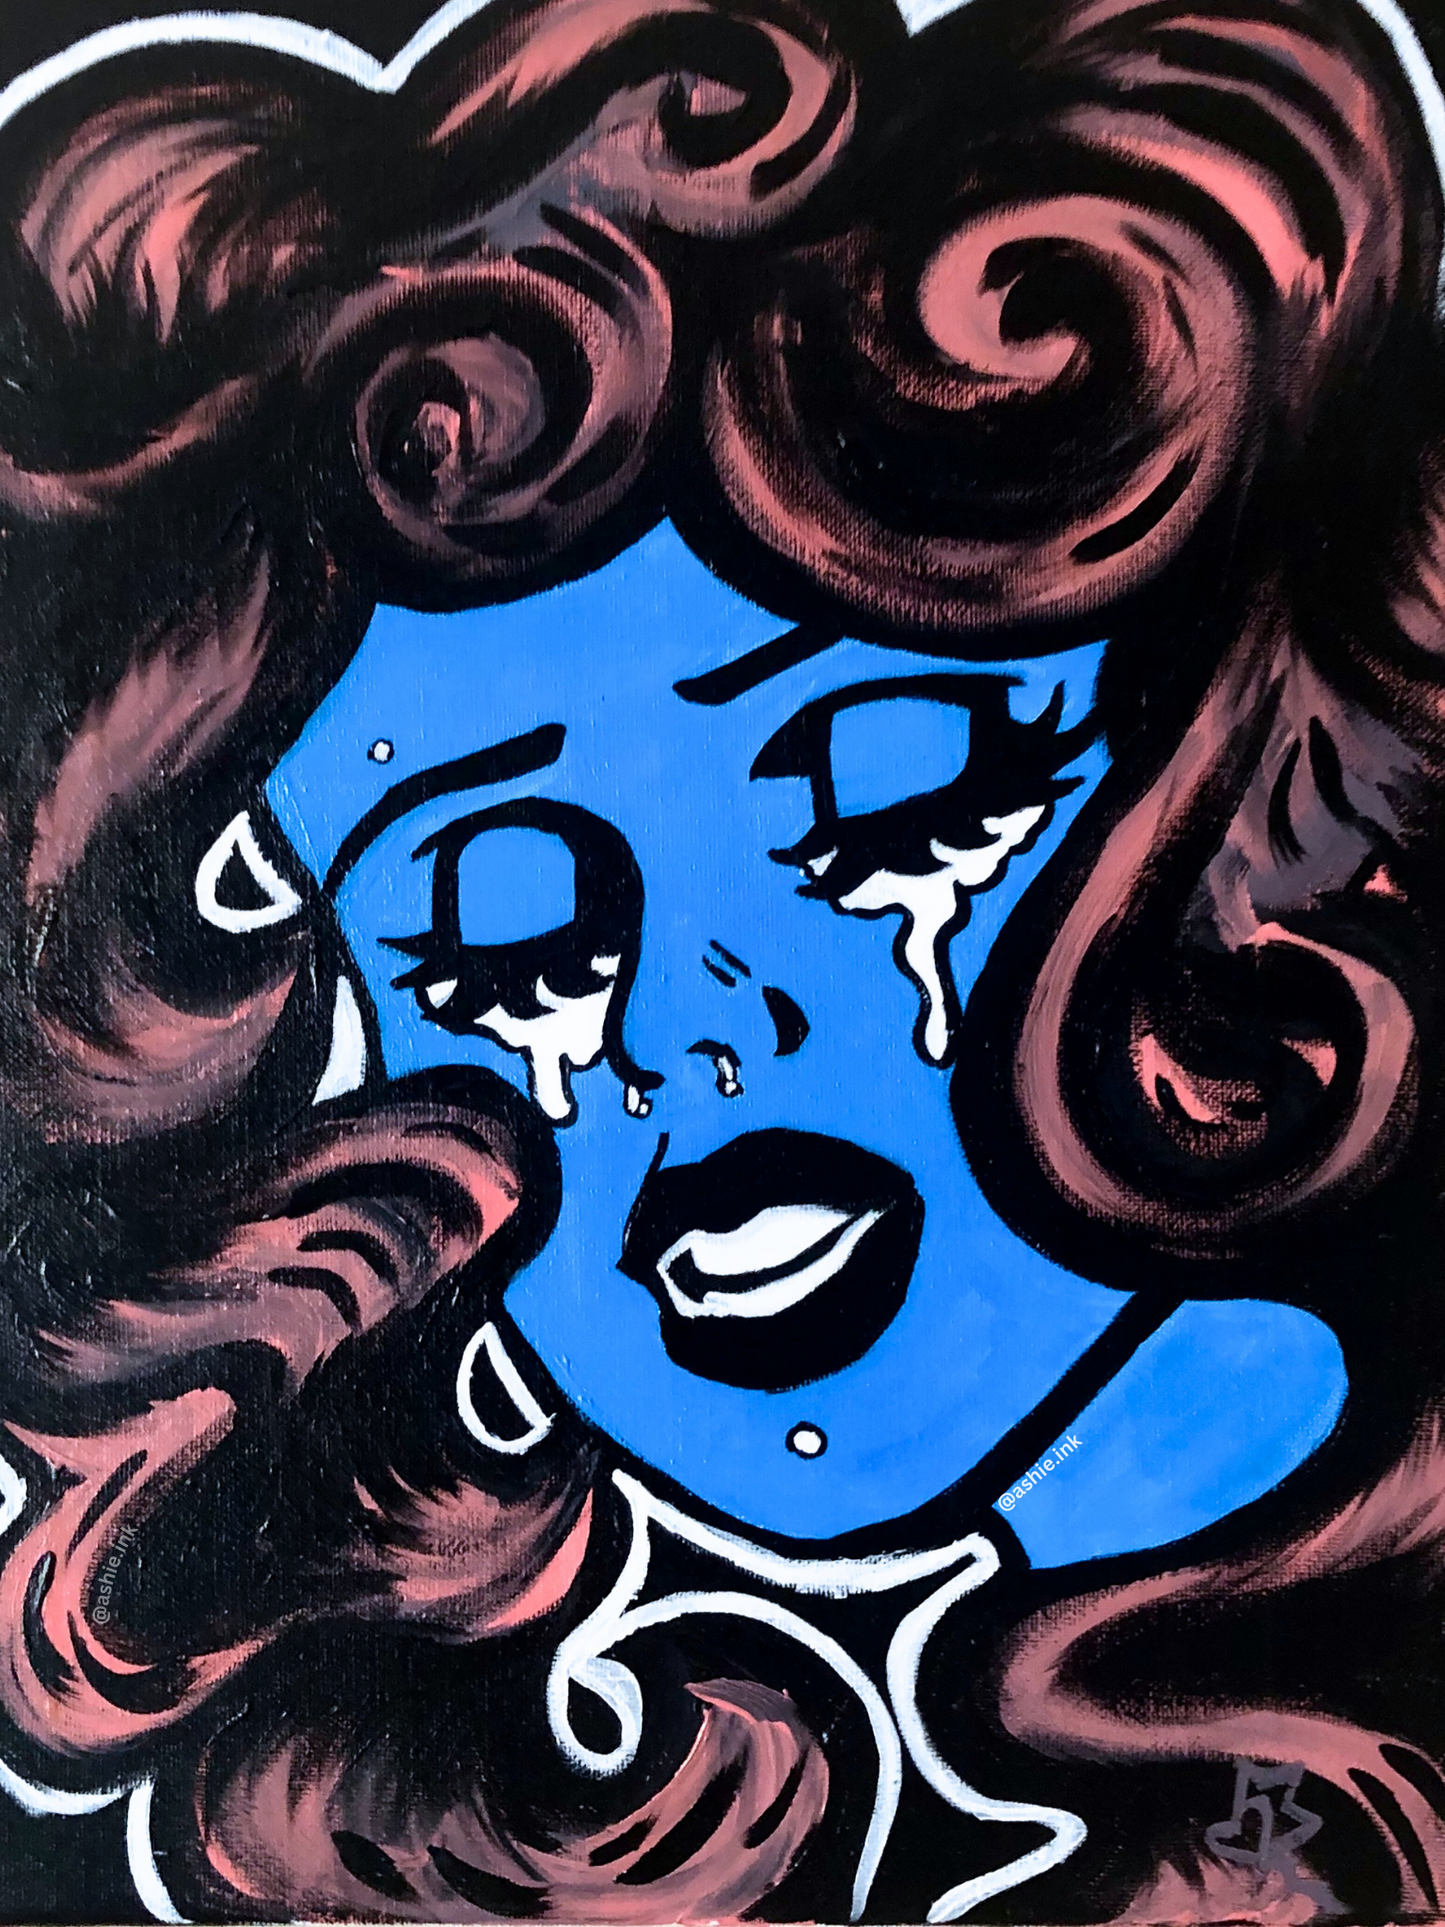 Comic Book Girl 3, 2020 - Framed Print